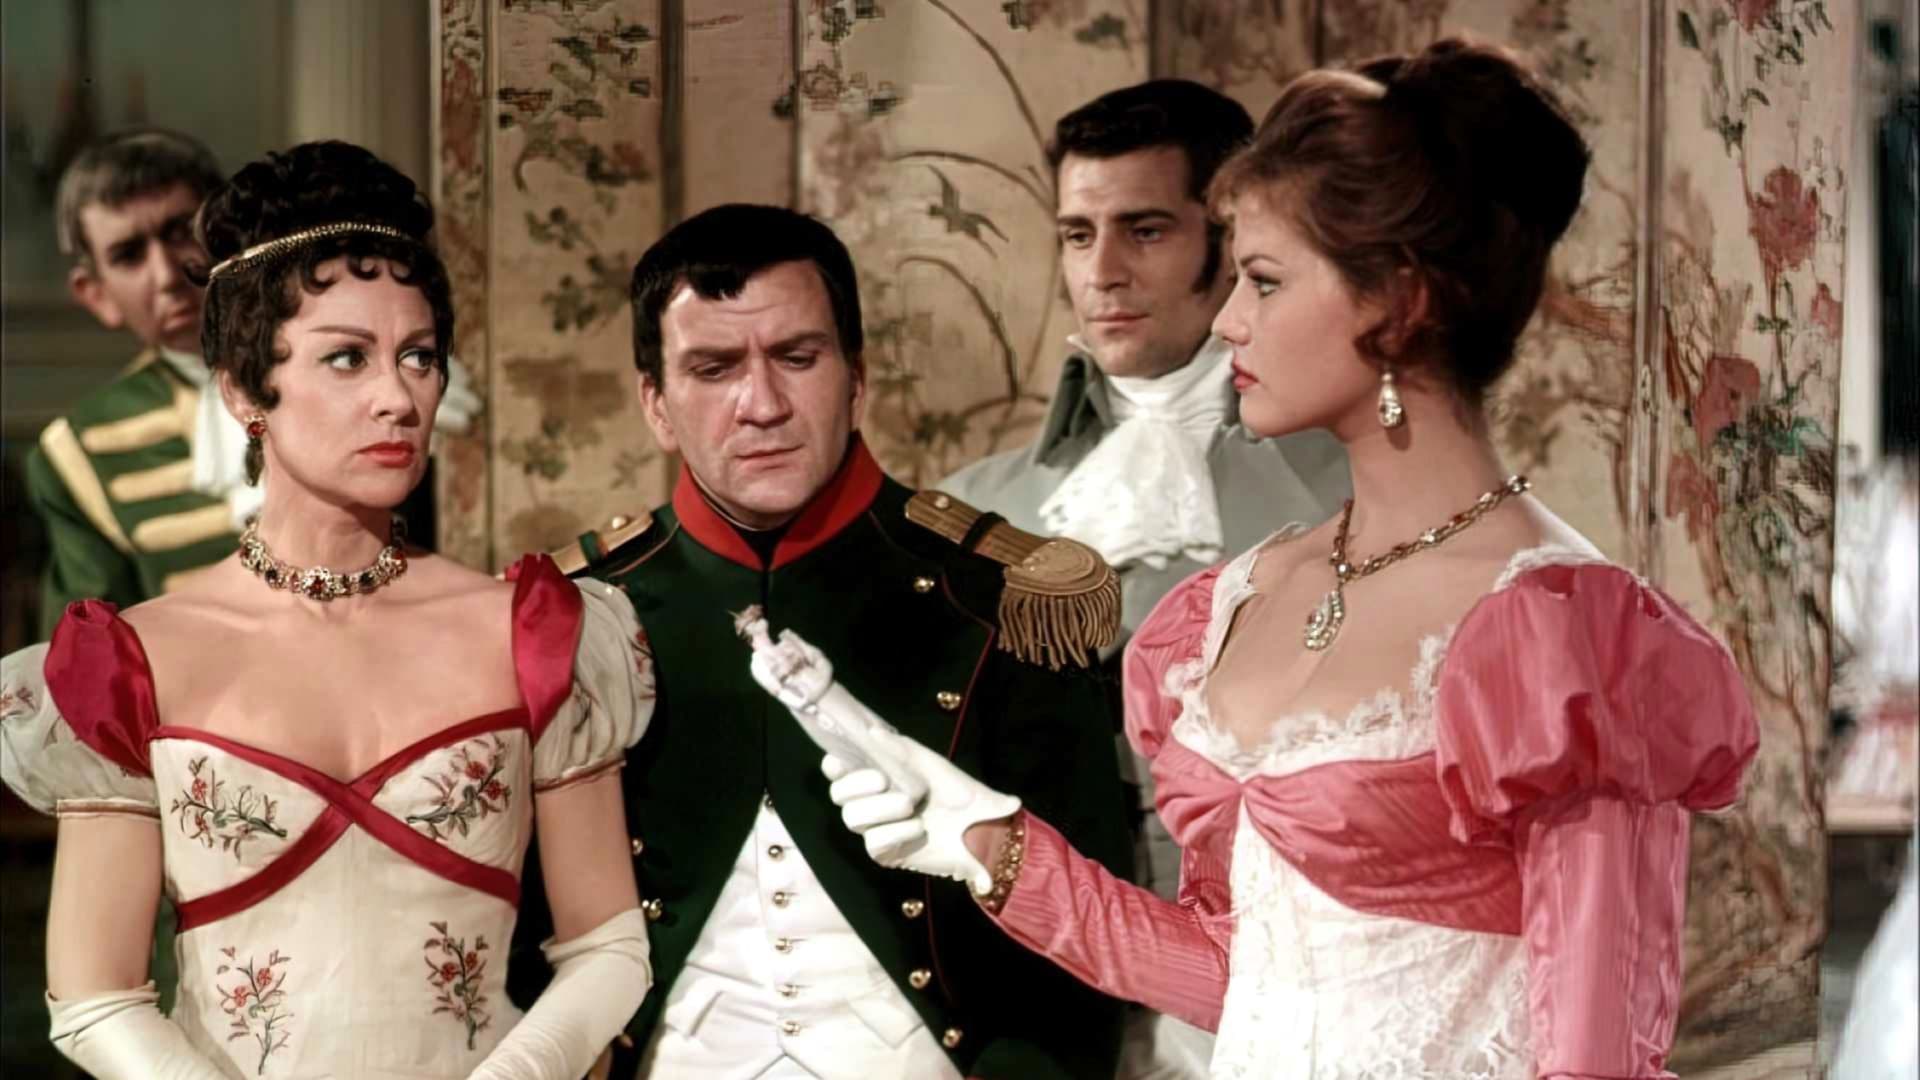 Tapeta filmu Napoleon / The Battle of Austerlitz (1960)